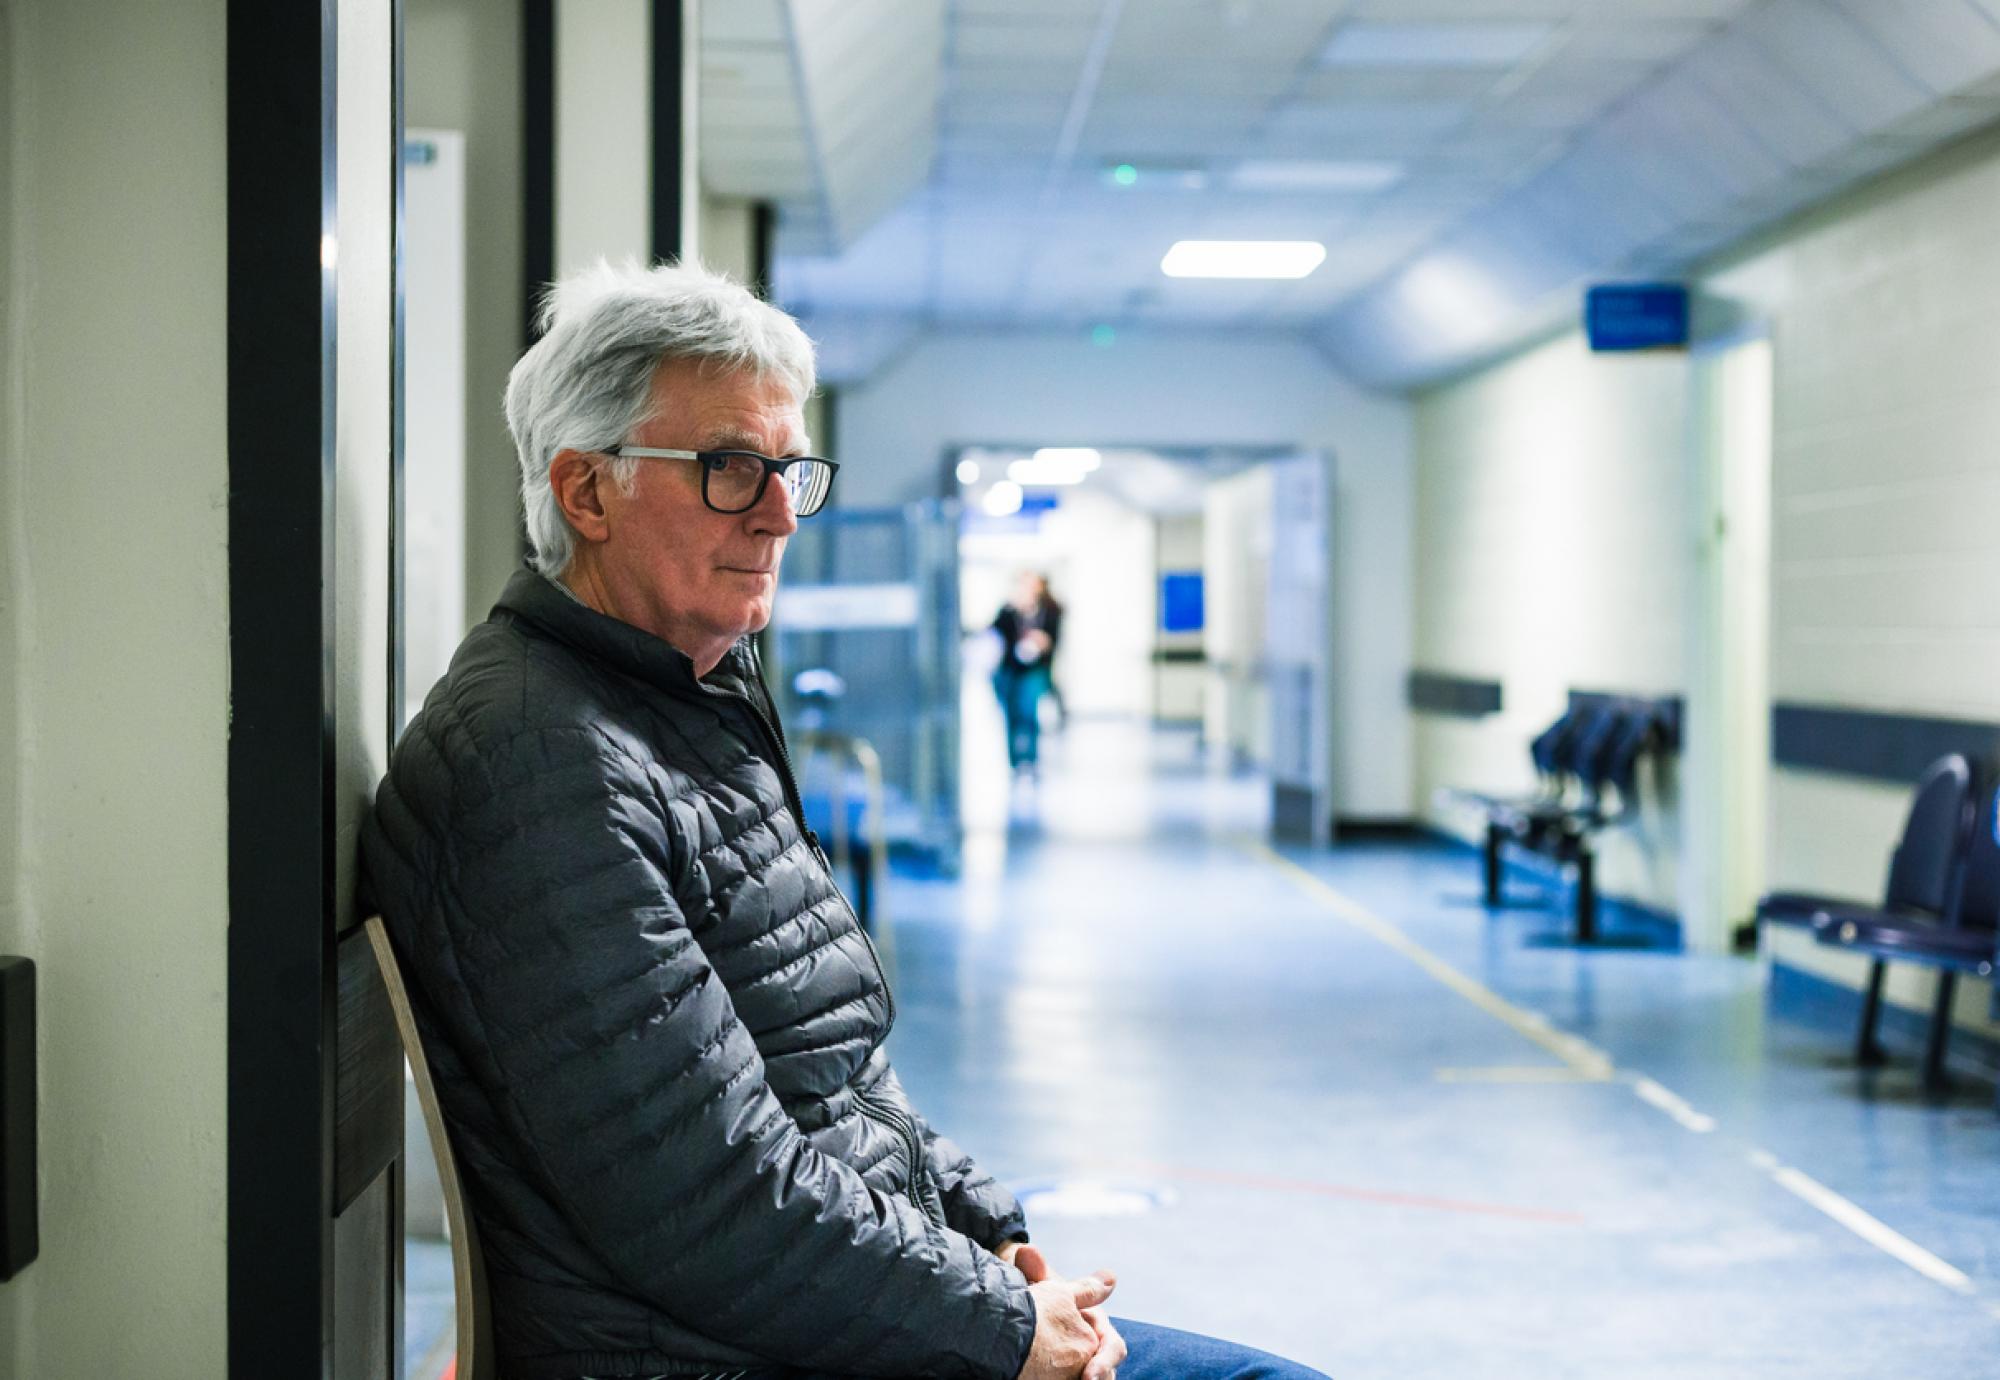 Man waiting in hospital corridor